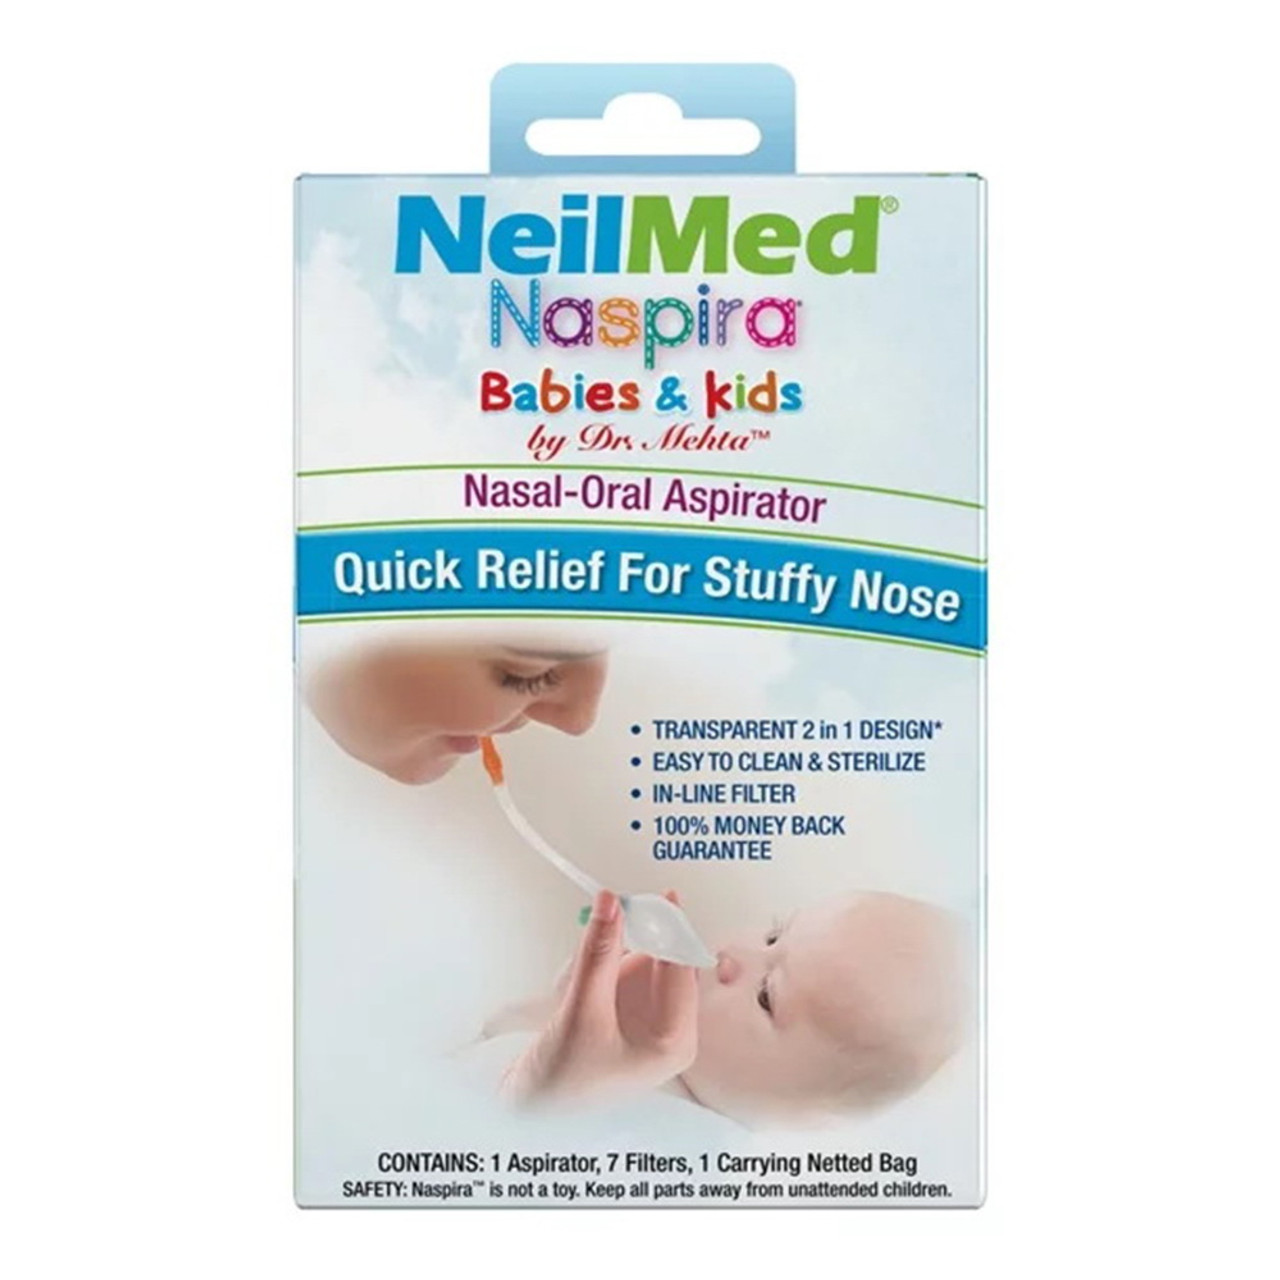 NeilMed® Baby NäsaKleen® Nasal-Oral Aspirator - SQuiP